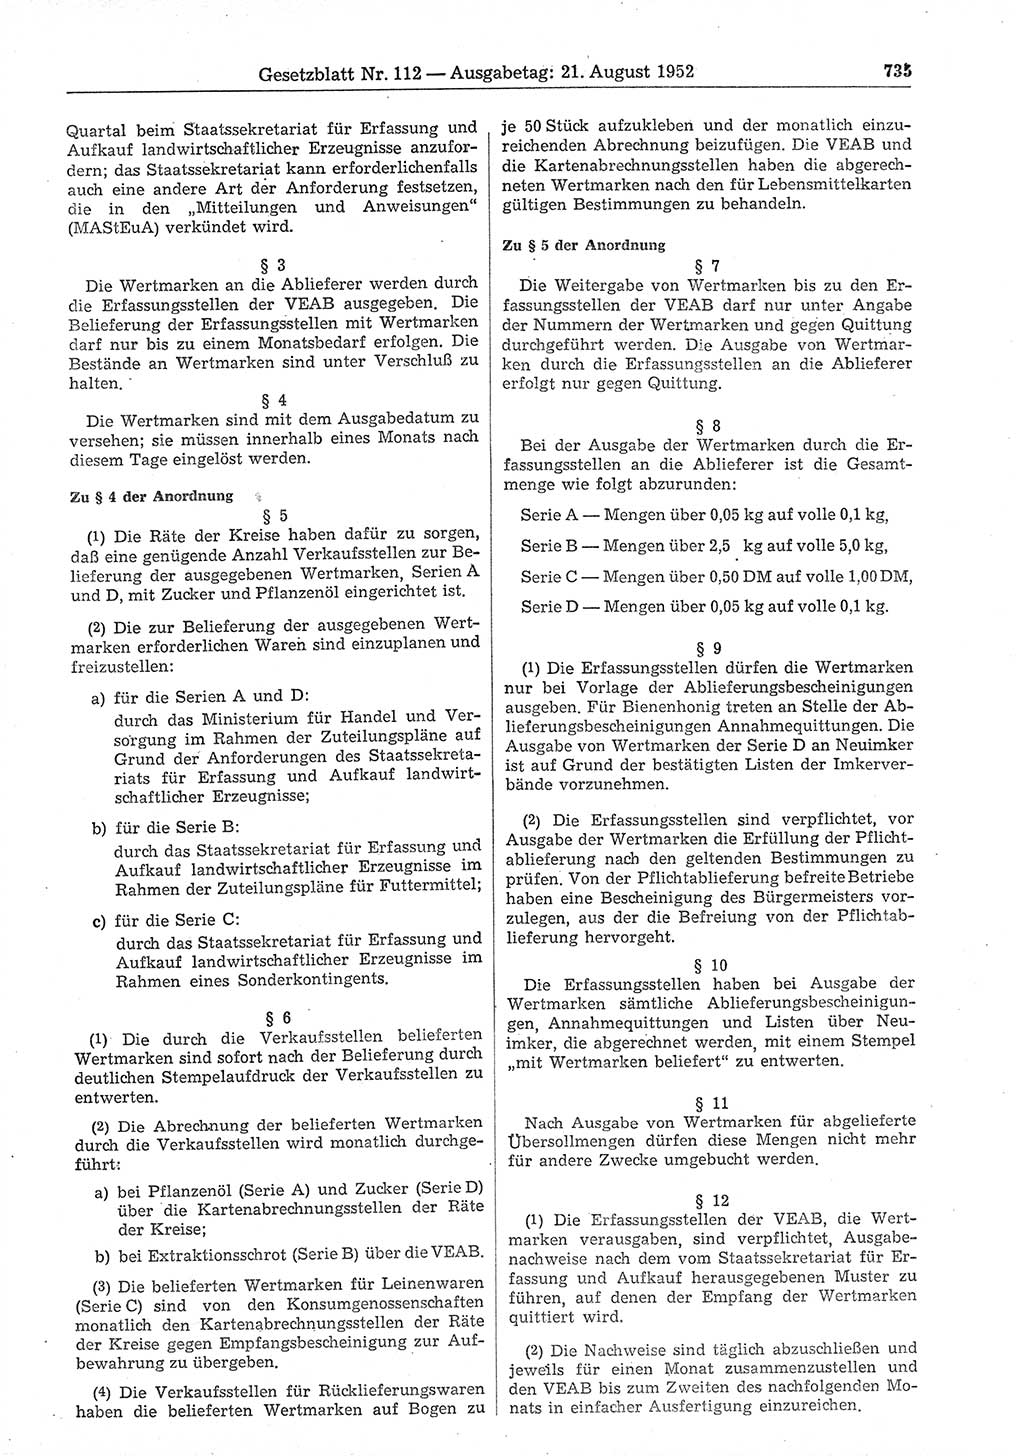 Gesetzblatt (GBl.) der Deutschen Demokratischen Republik (DDR) 1952, Seite 735 (GBl. DDR 1952, S. 735)